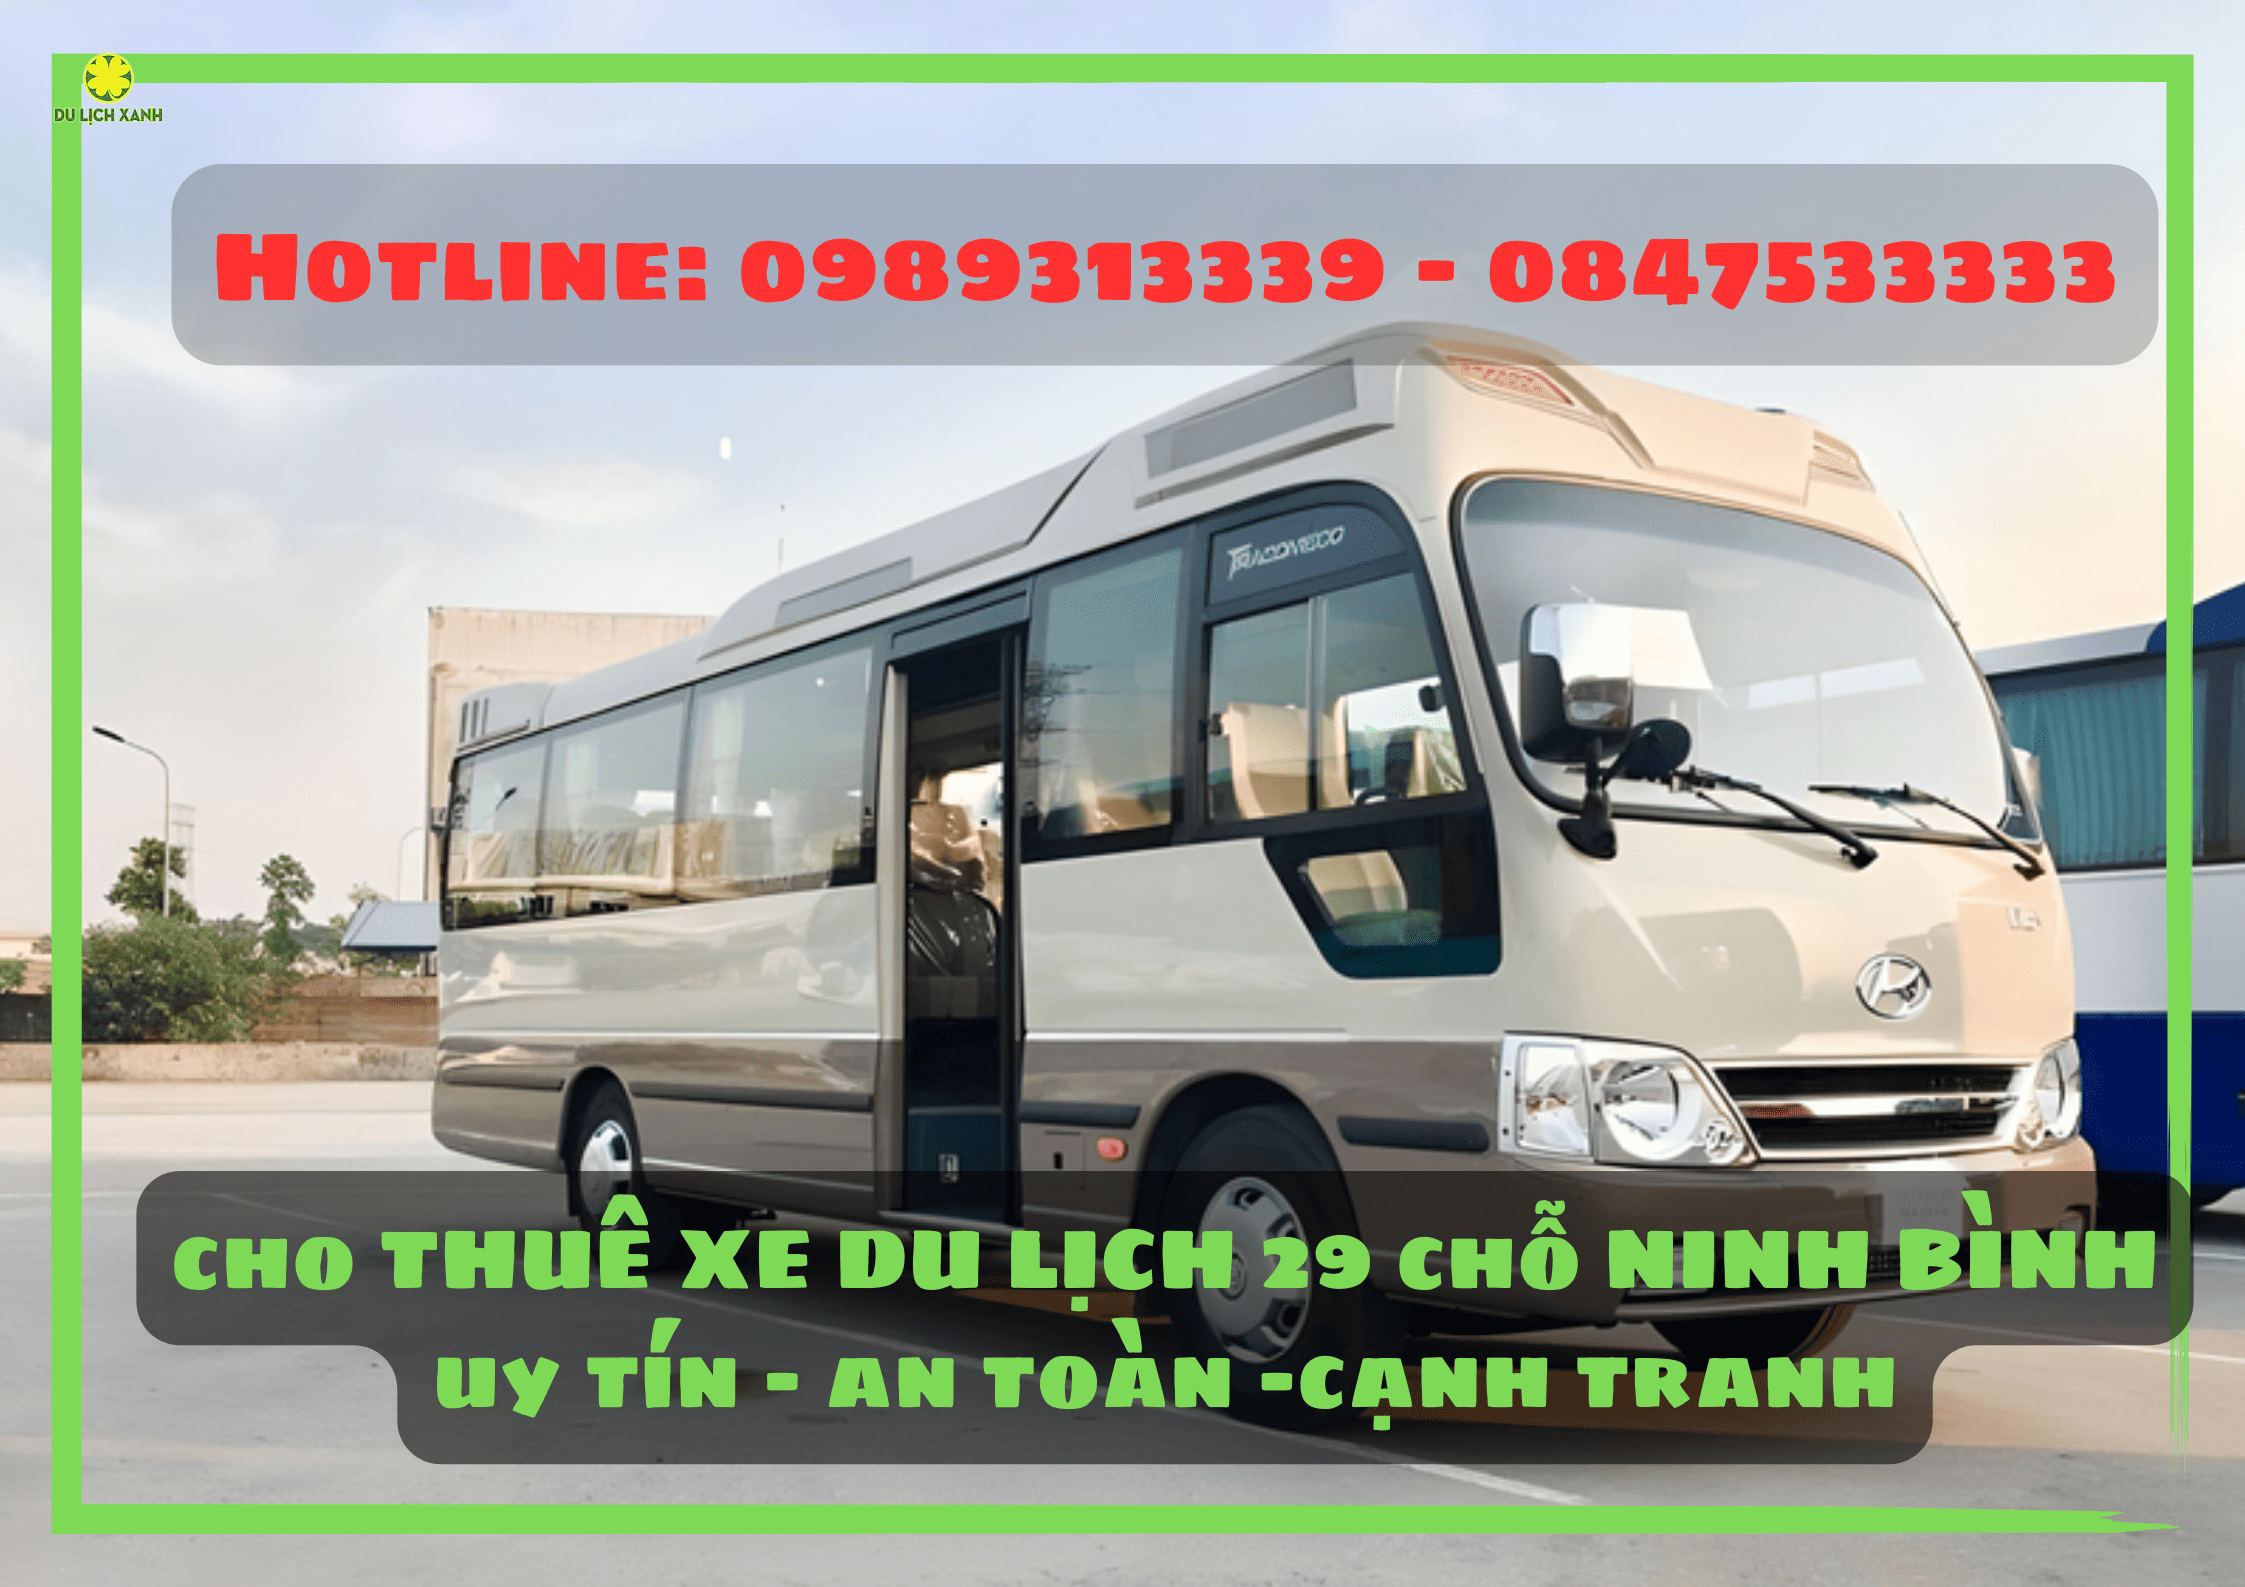 Cho thuê xe du lịch 29 chỗ tại Ninh Bình